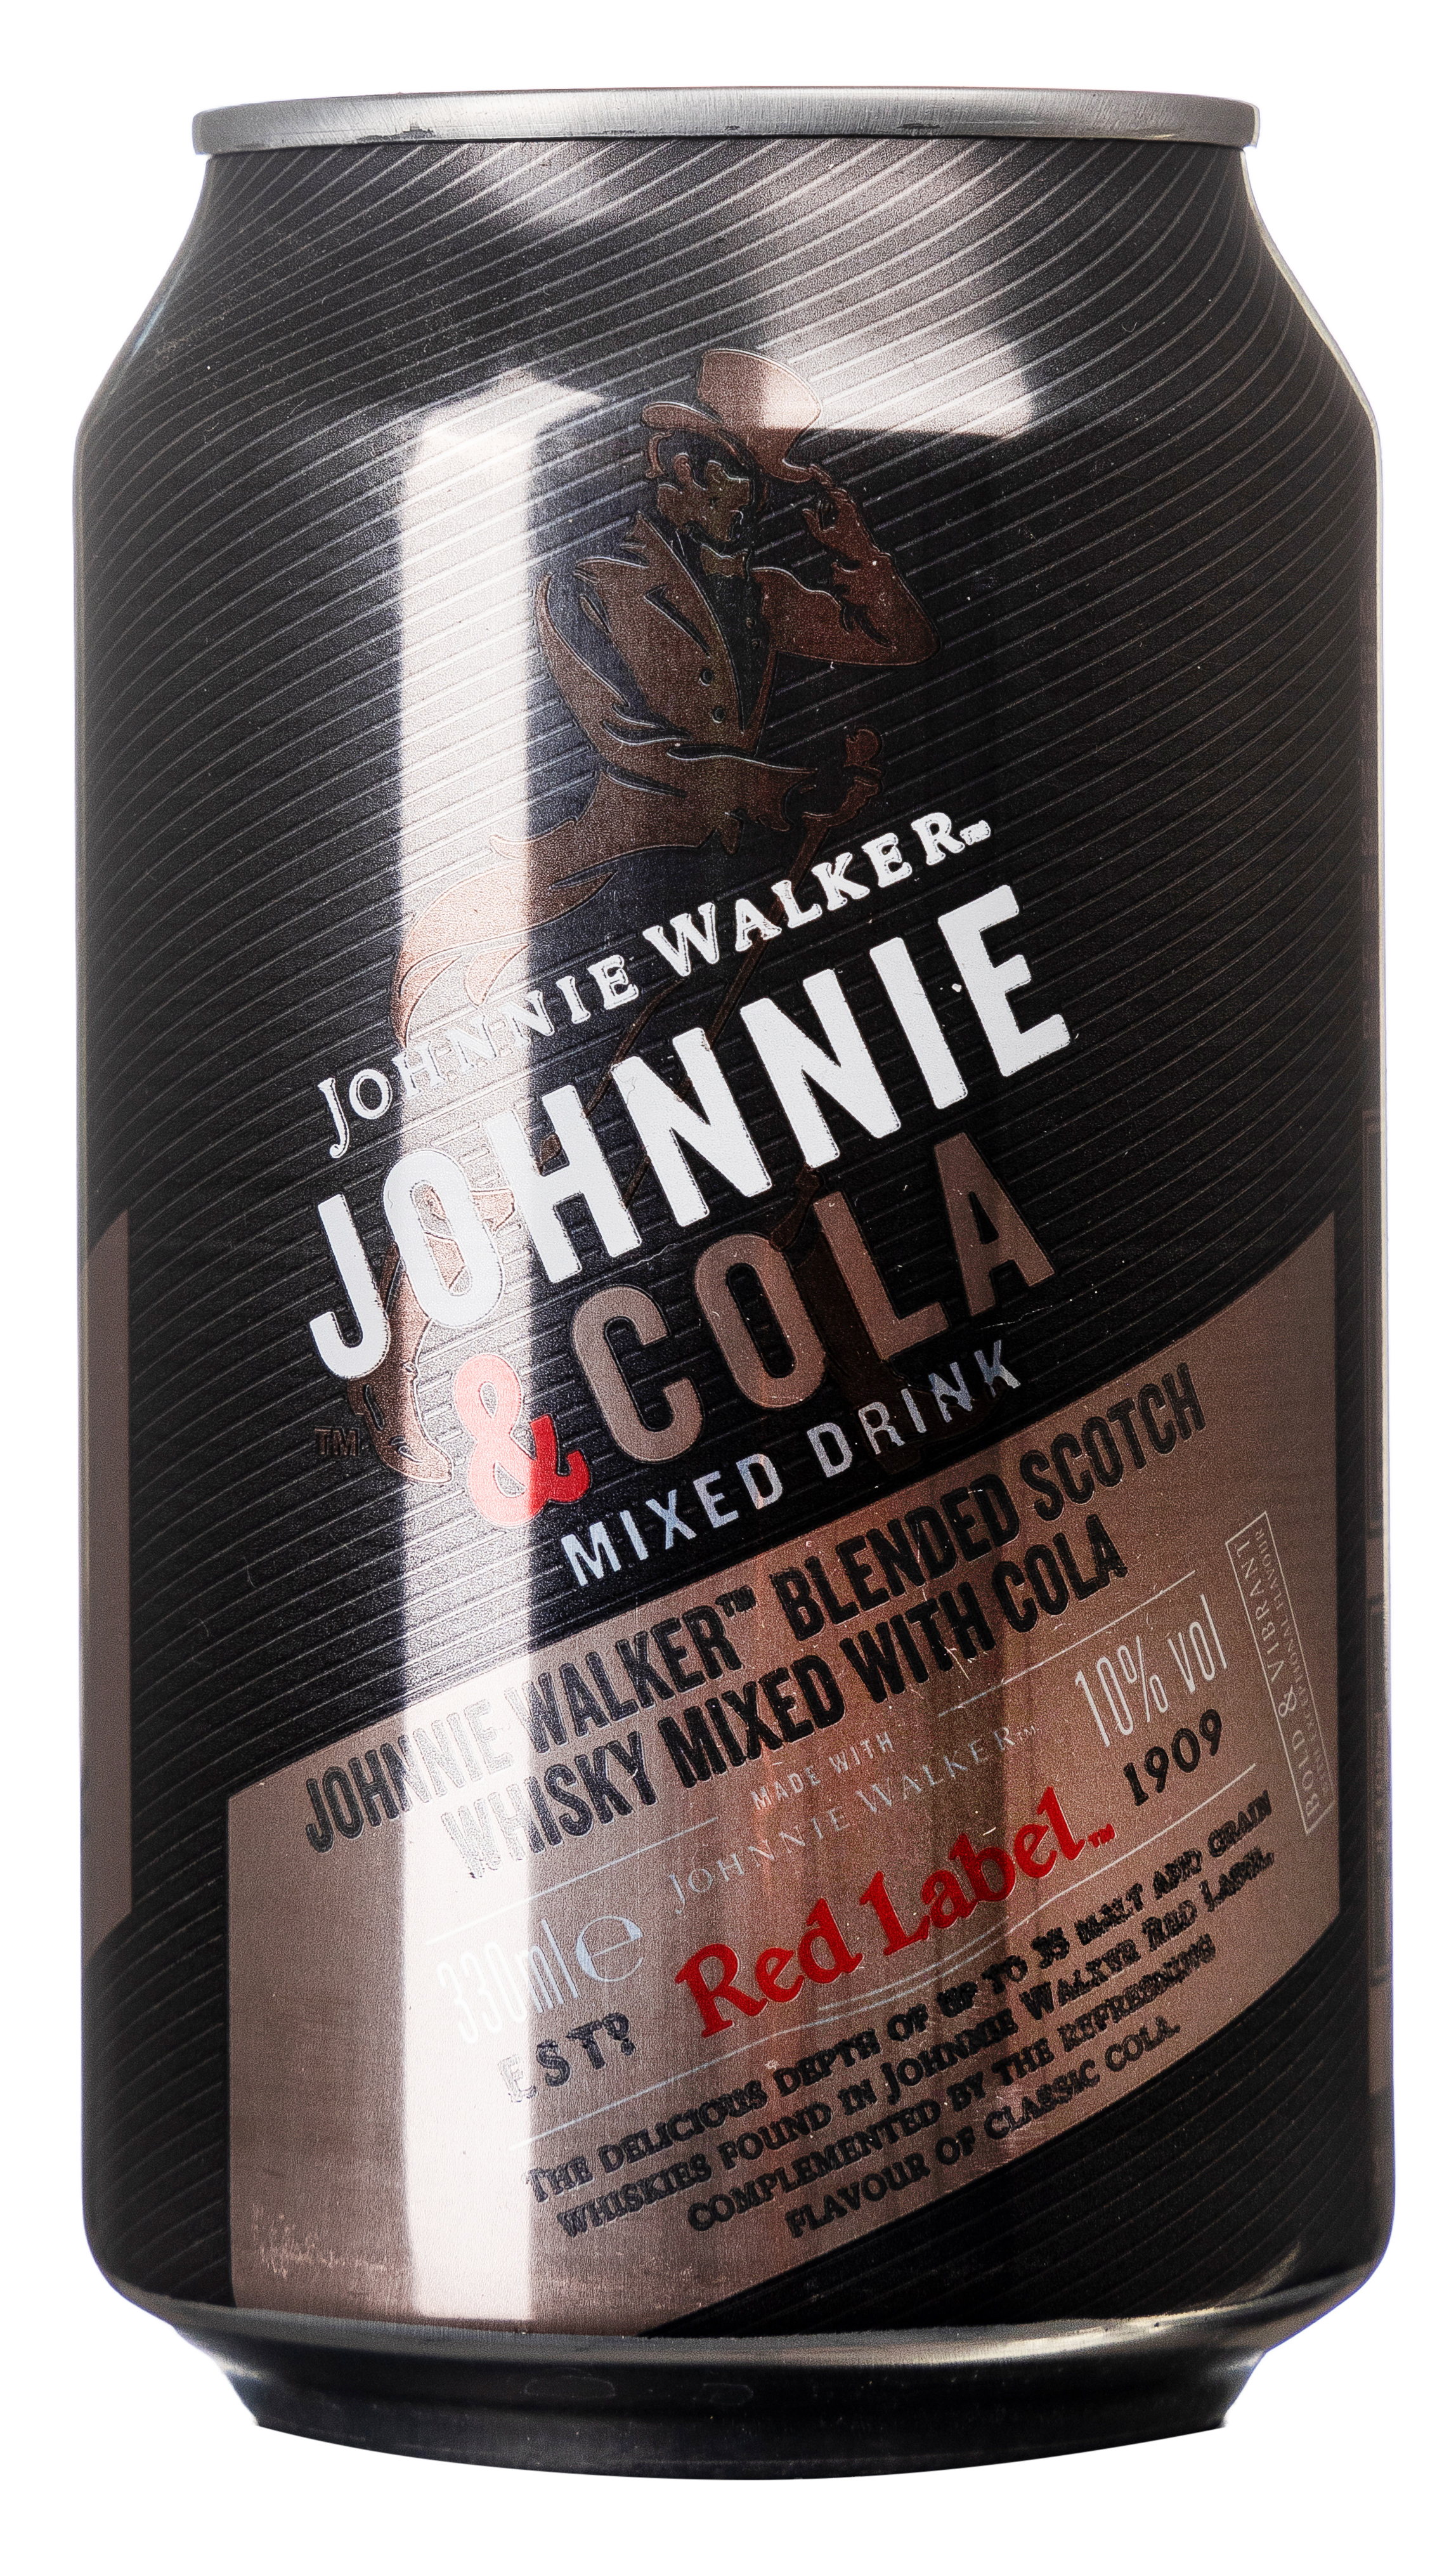 Johnnie Walker Cola 10% vol. 0,33L EINWEG 